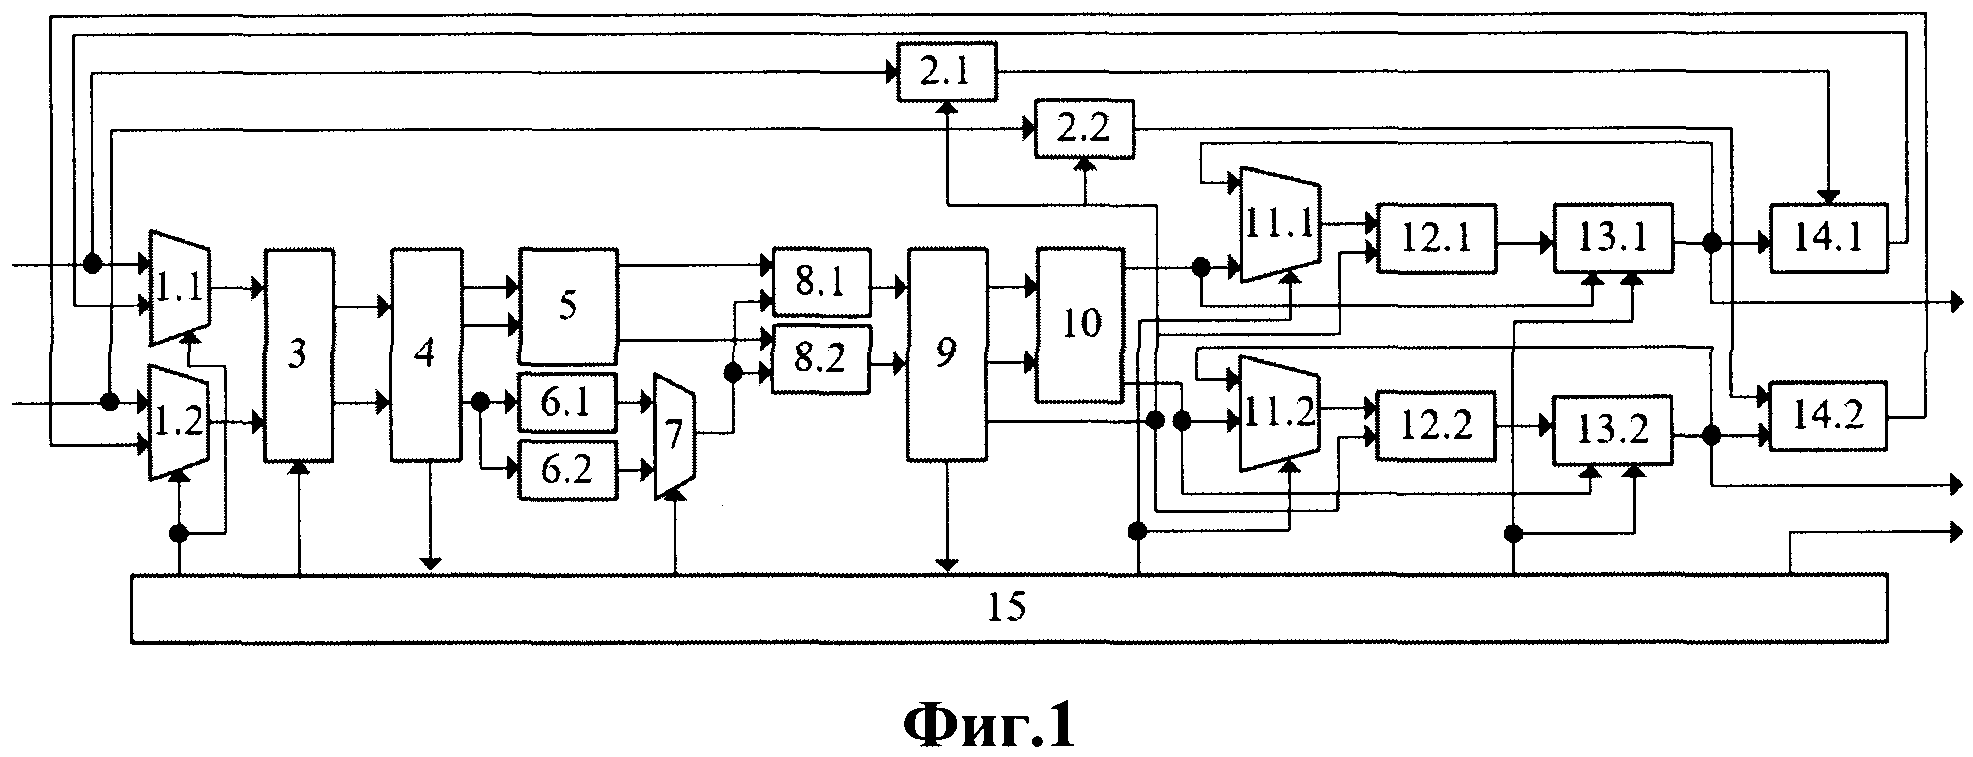 Способ реконфигурируемой фильтрации для понижения пик-фактора OFDM-сигналов и устройство для его реализации